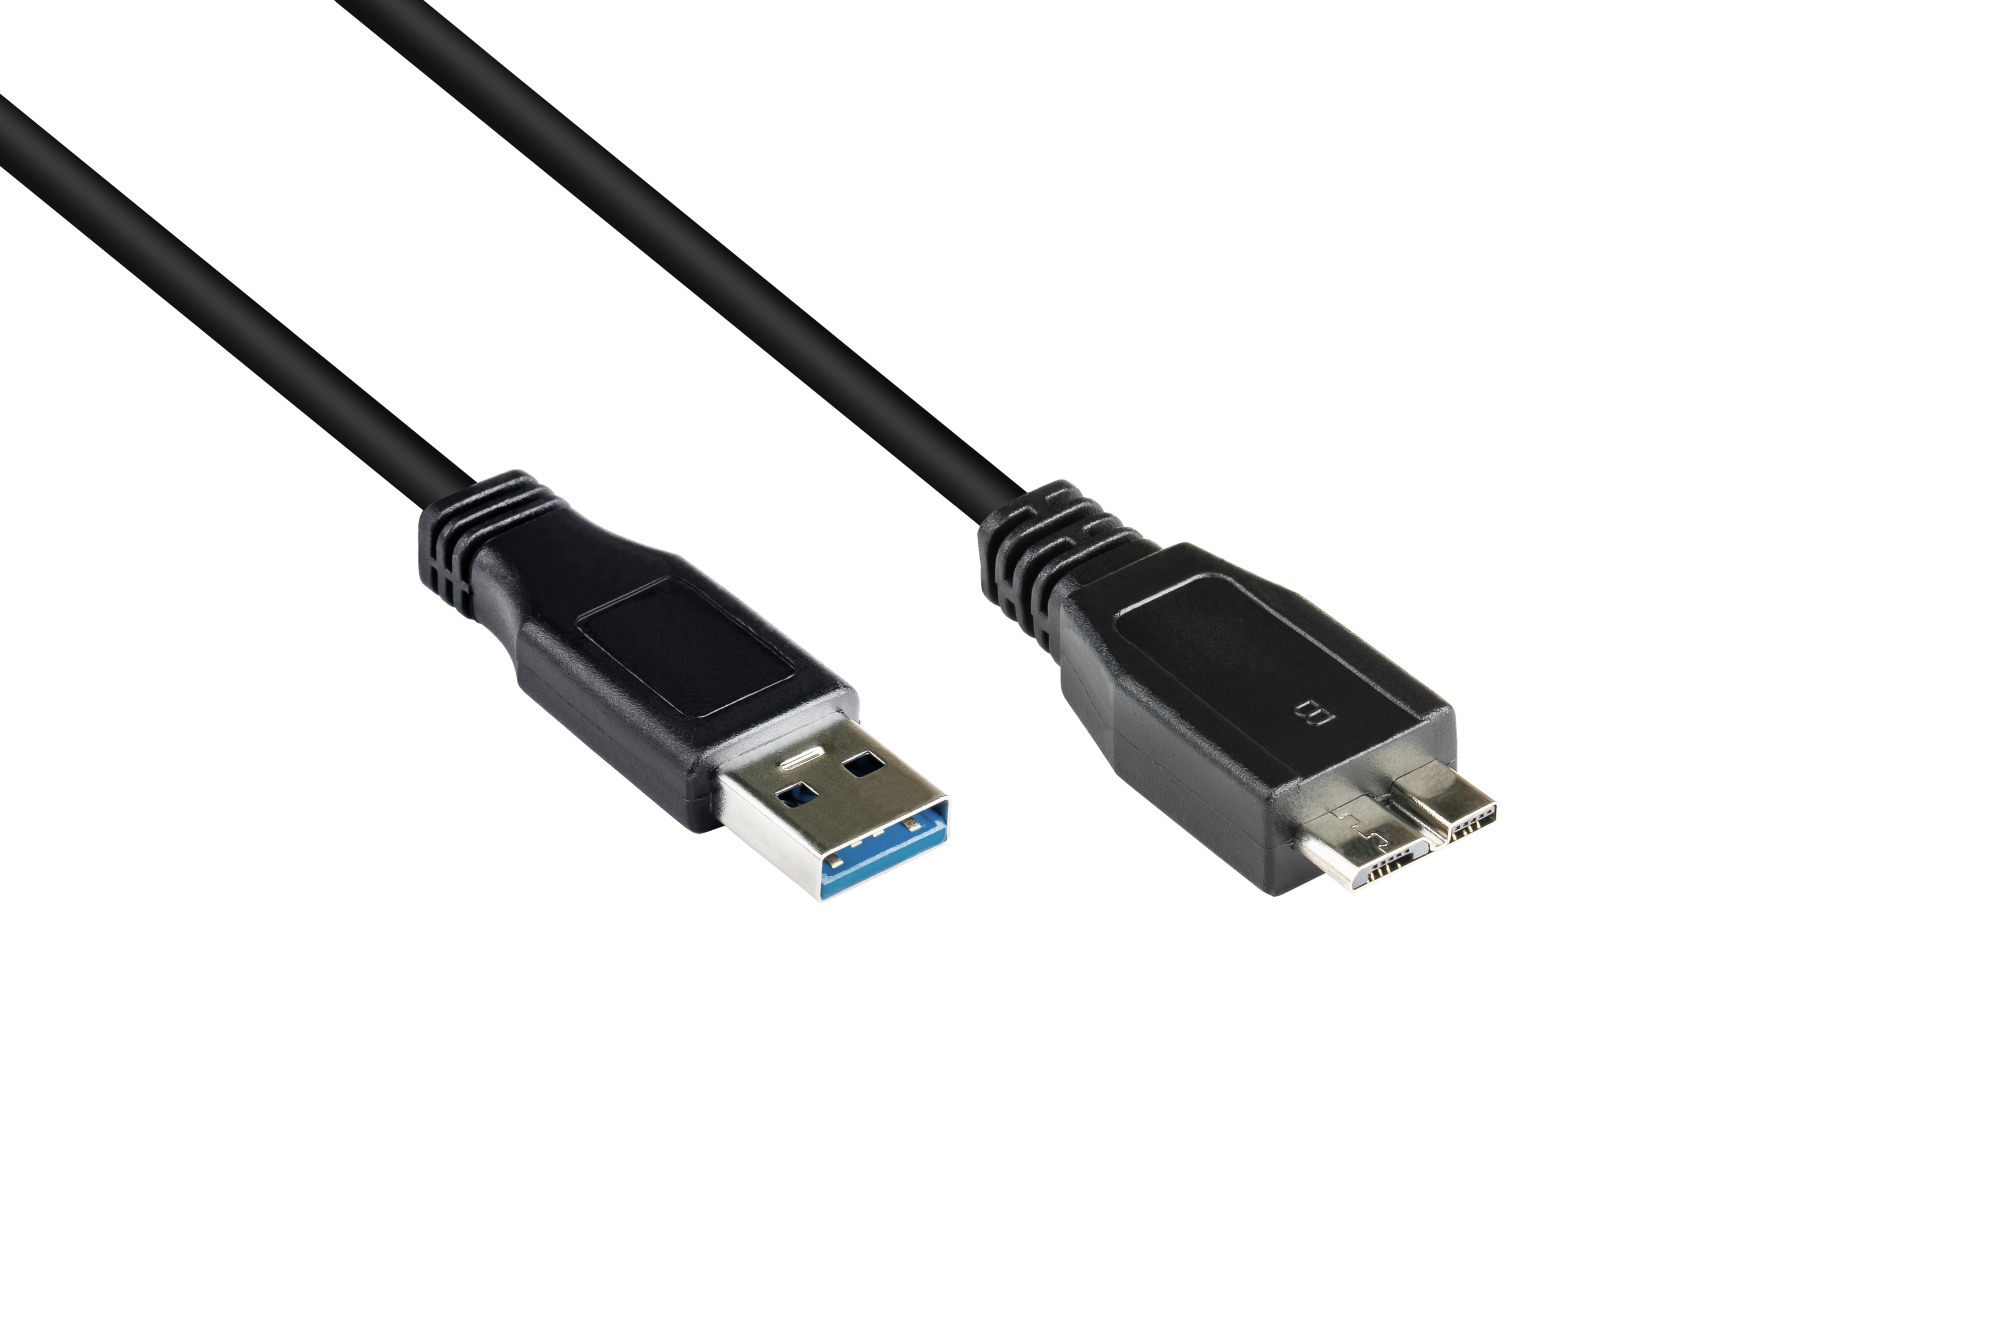 Anschlusskabel USB 3.0 Stecker A an Stecker Micro B, schwarz, 2m, Good Connections®